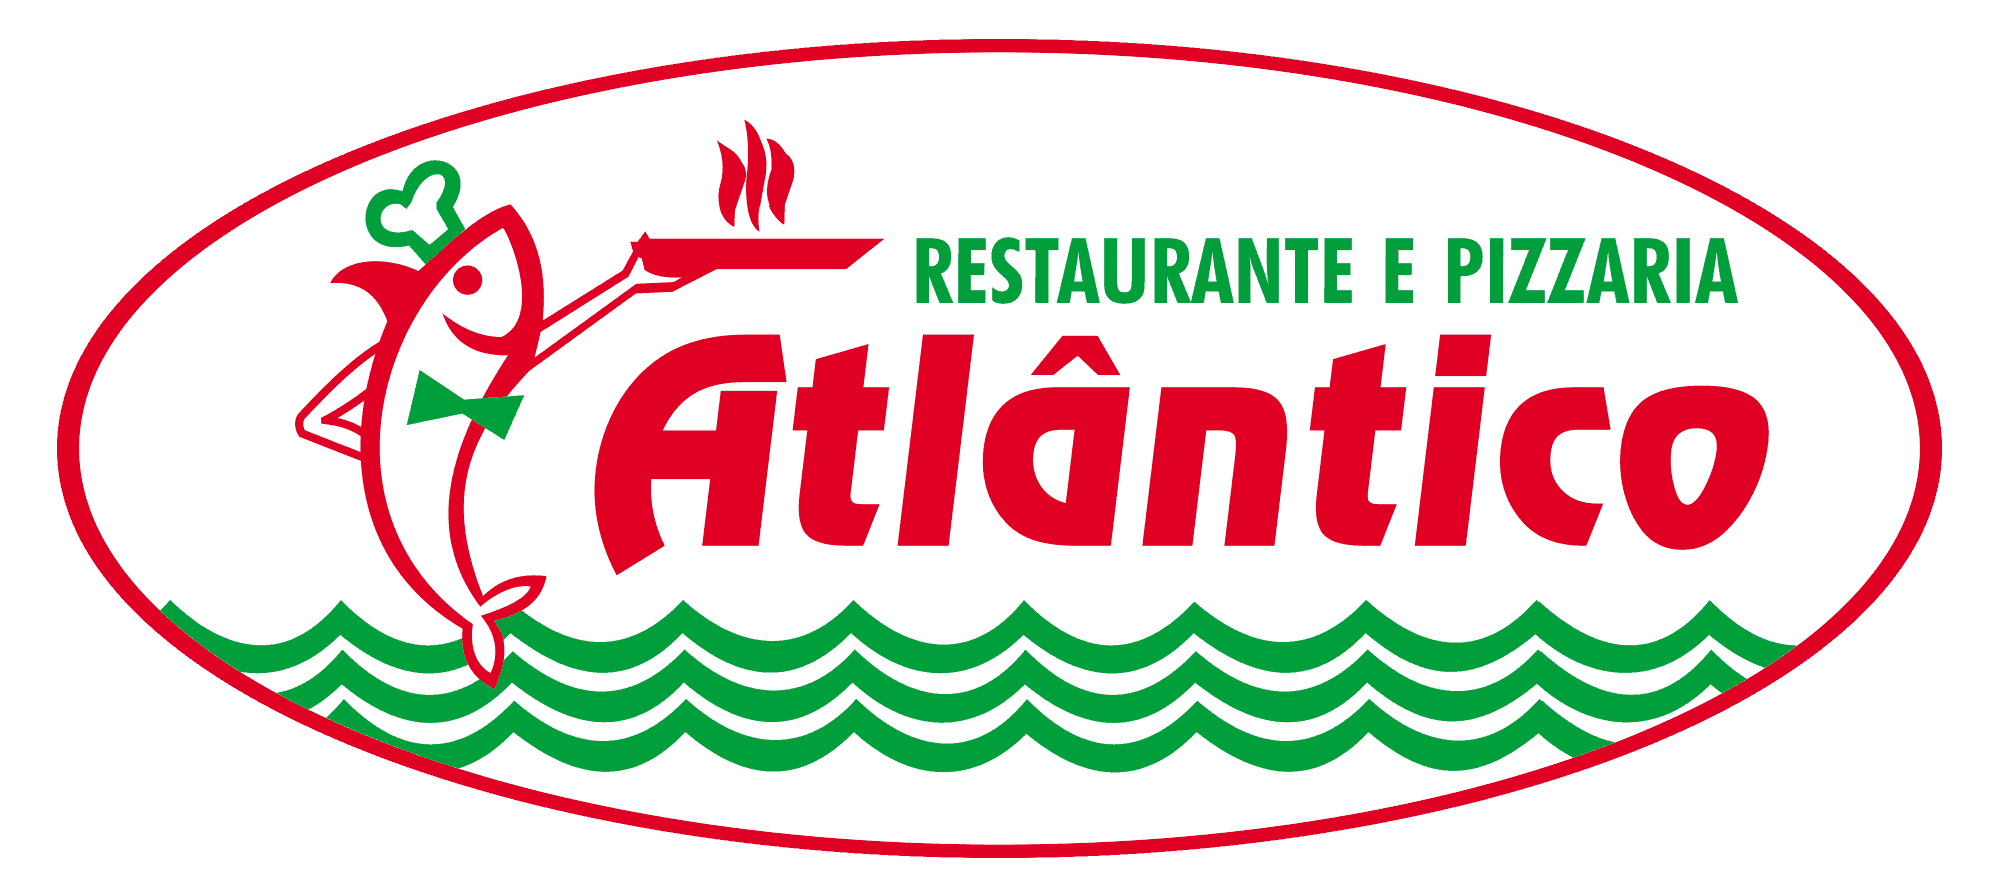 Restaurante e pizzaria atlântico: tradição em inovação.